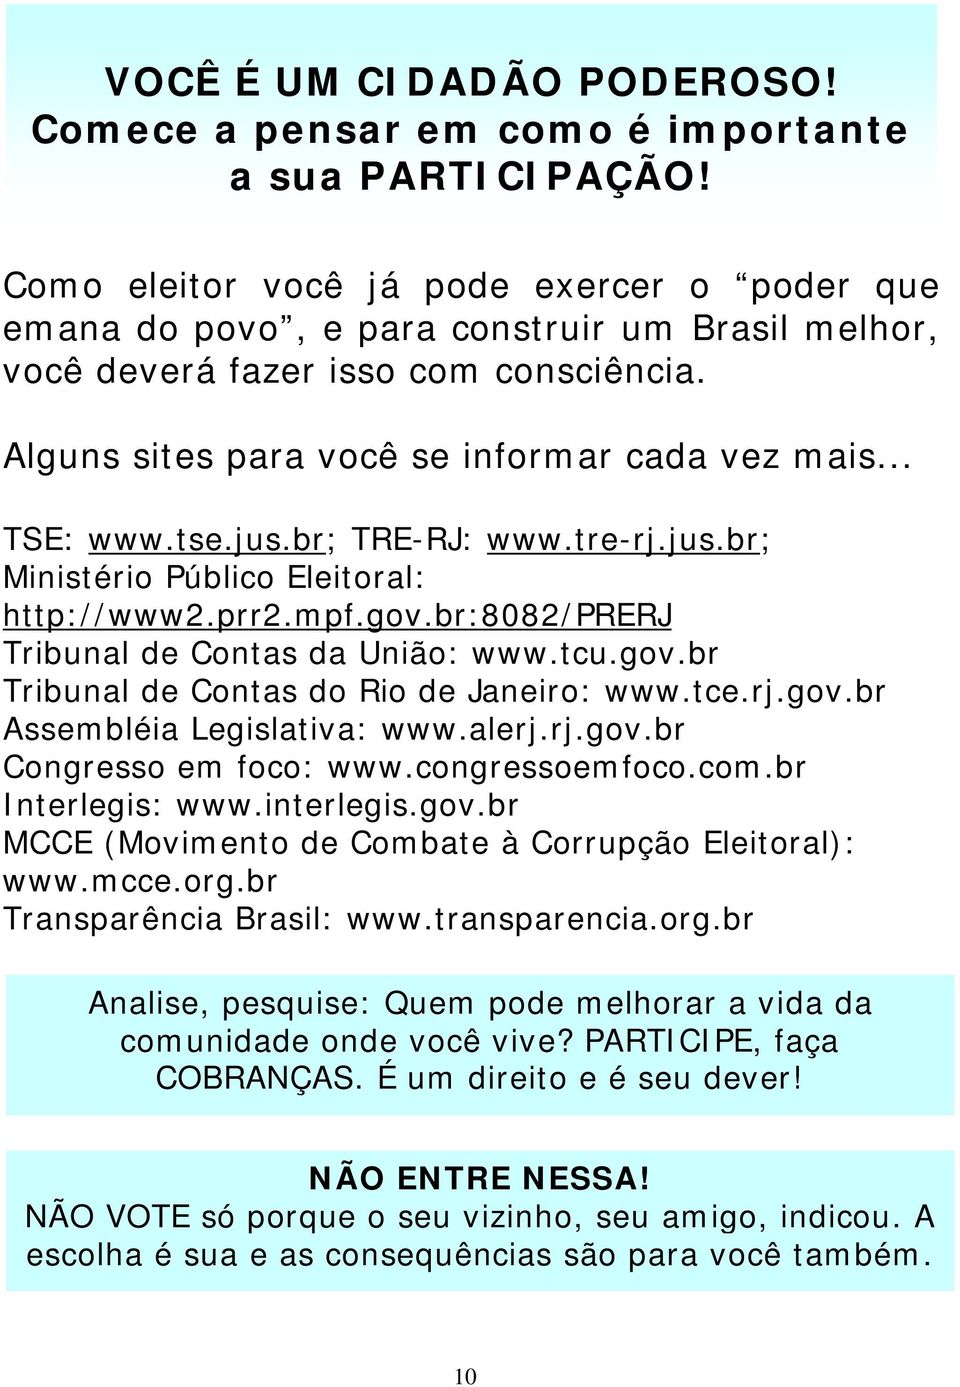 tse.jus.br; TRE-RJ: www.tre-rj.jus.br; Ministério Público Eleitoral: http://www2.prr2.mpf.gov.br:8082/prerj Tribunal de Contas da União: www.tcu.gov.br Tribunal de Contas do Rio de Janeiro: www.tce.